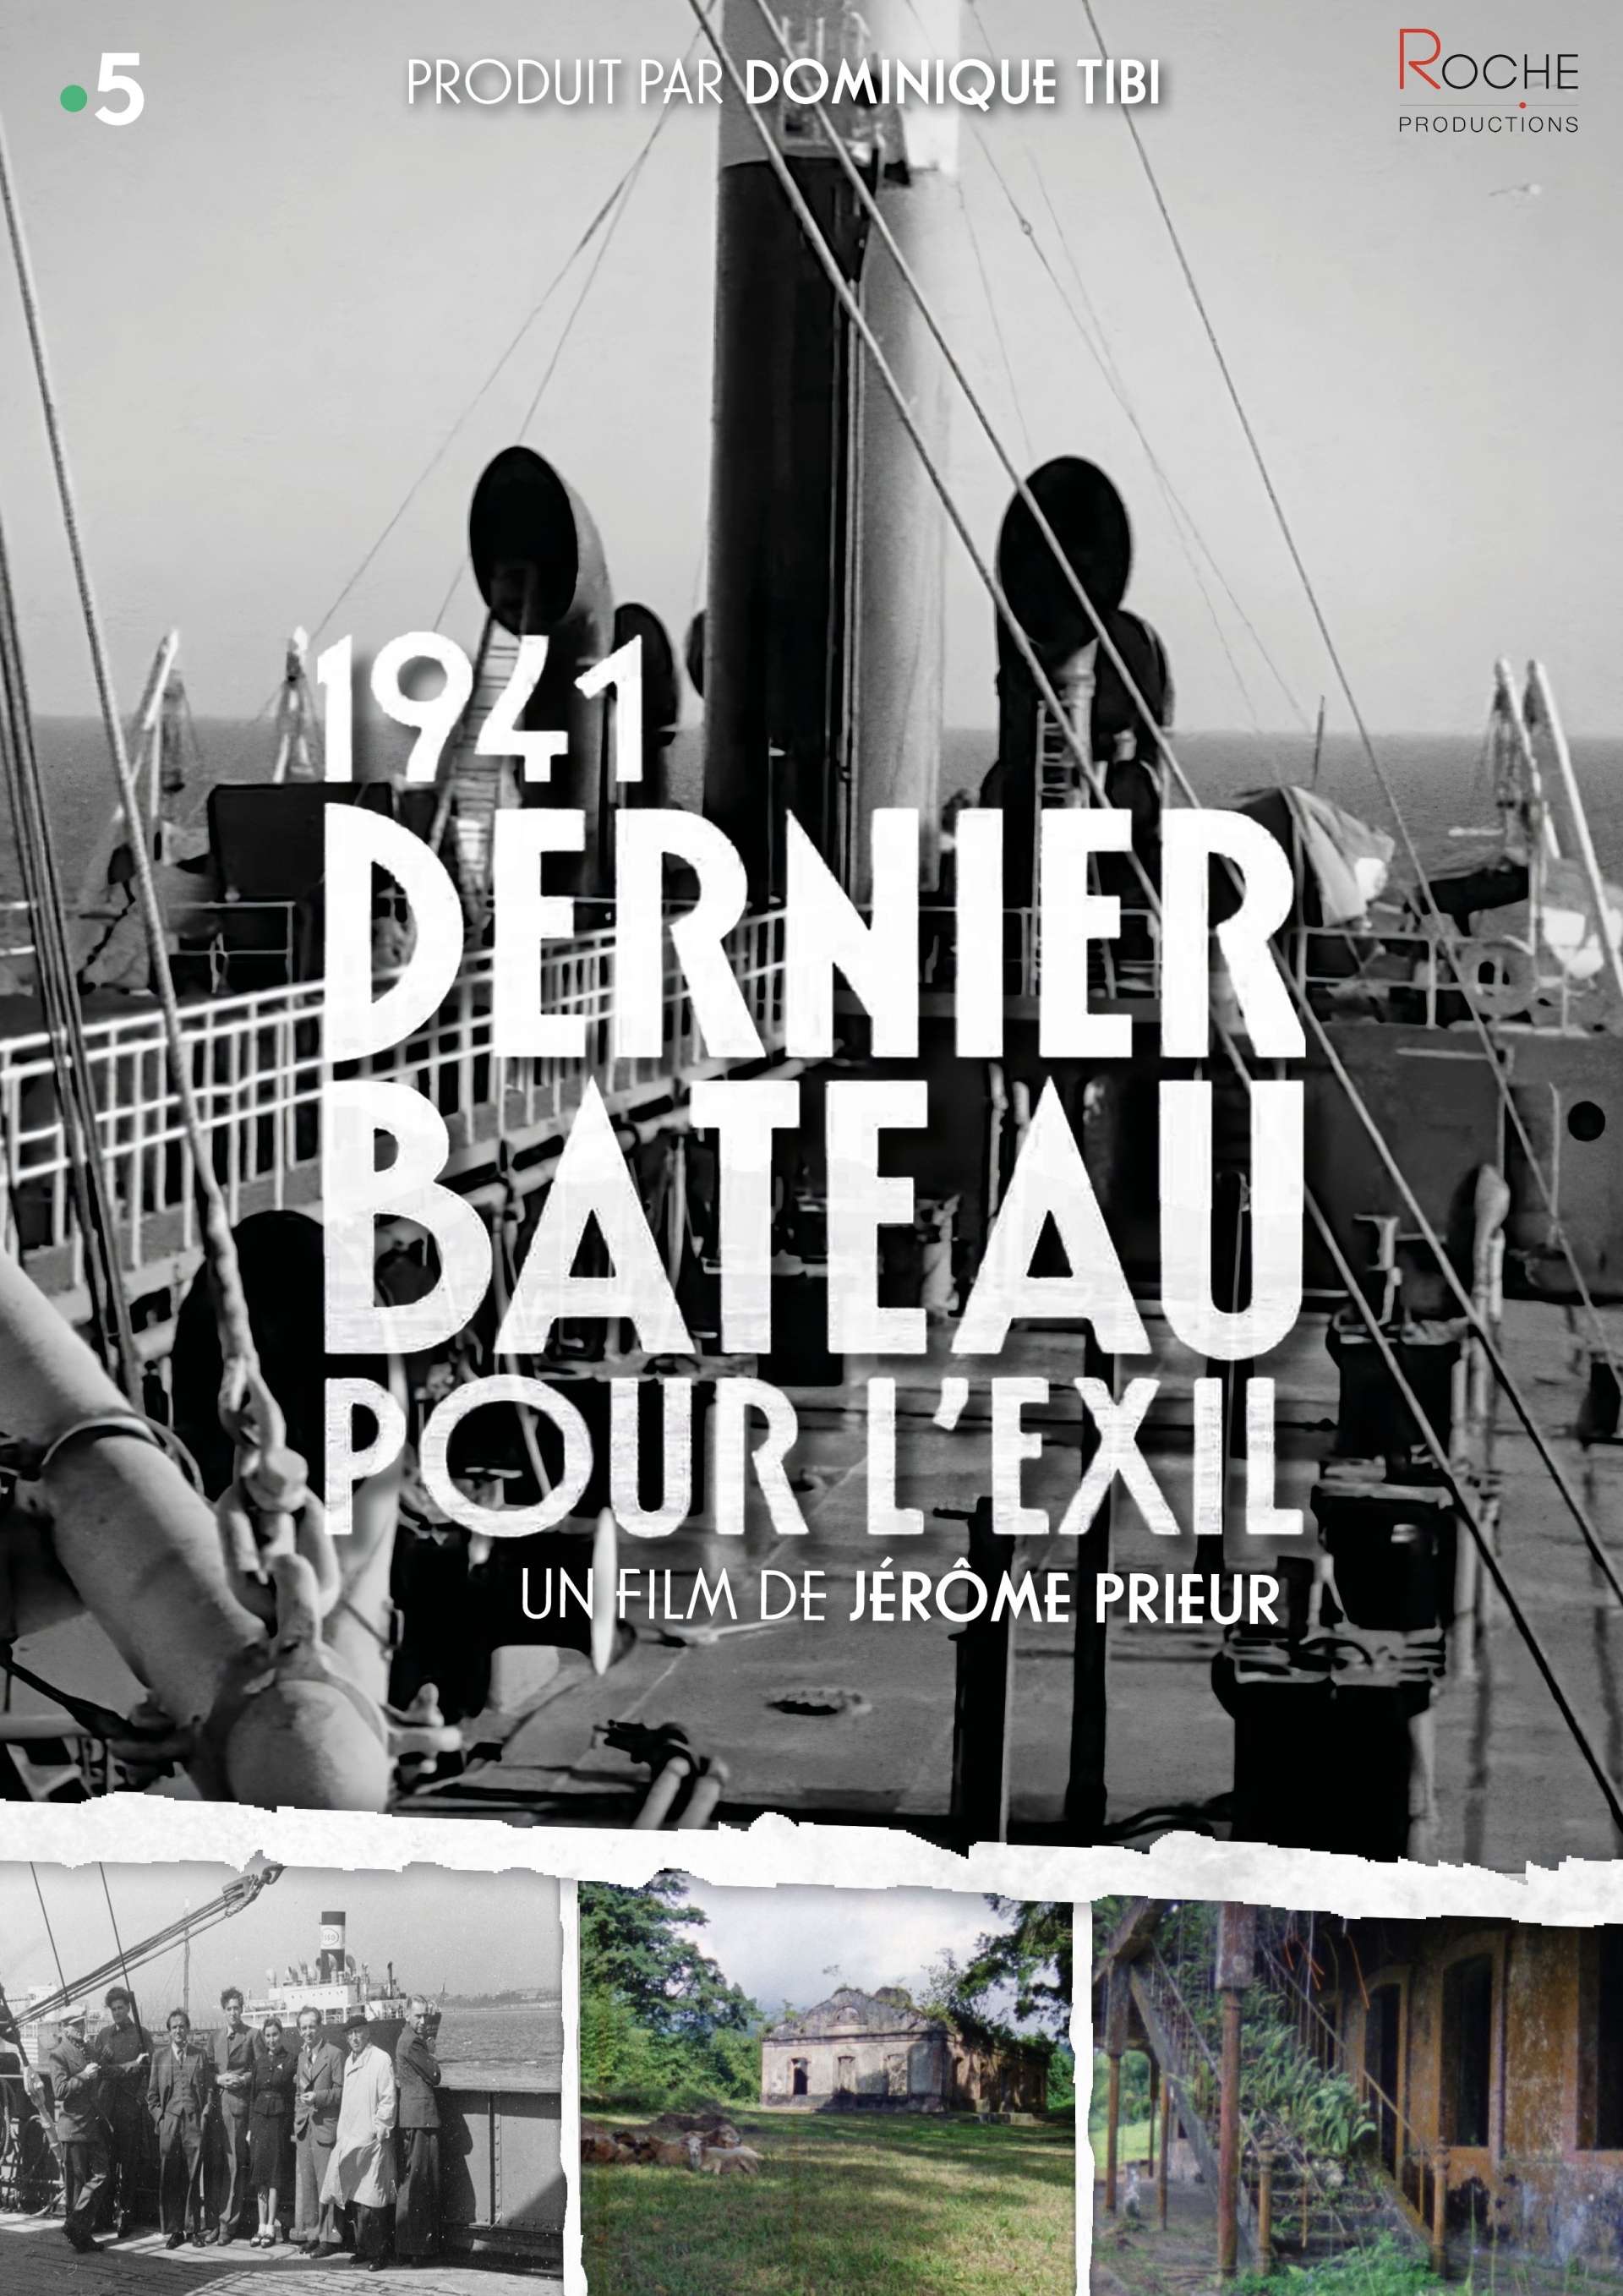 1941_Dernier_bateau_-_Affiche_portrait.jpg